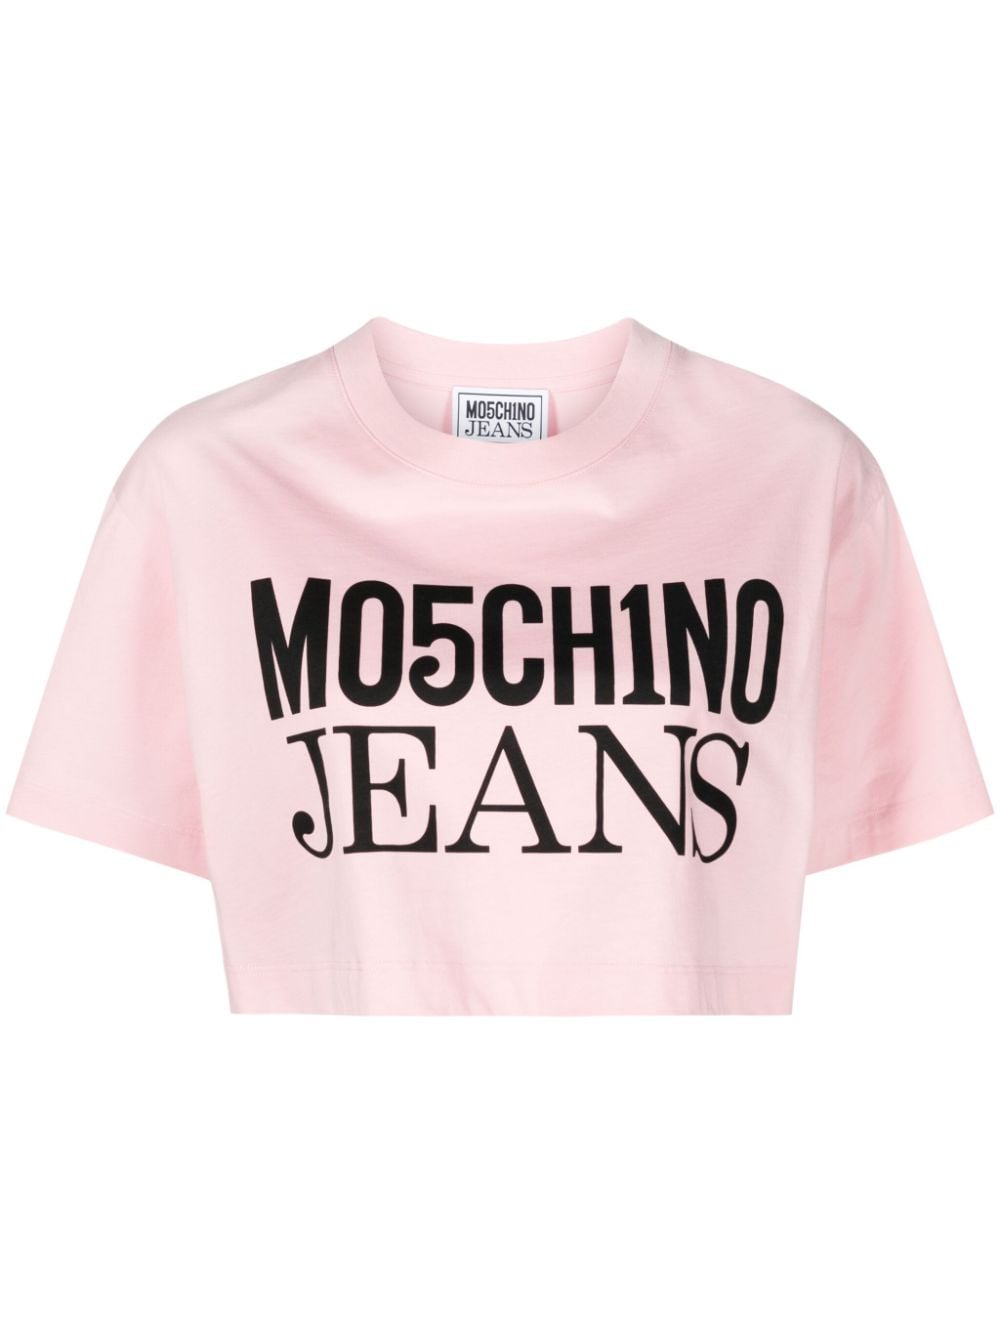 MOSCHINO JEANS logo-print cotton crop top - Pink von MOSCHINO JEANS